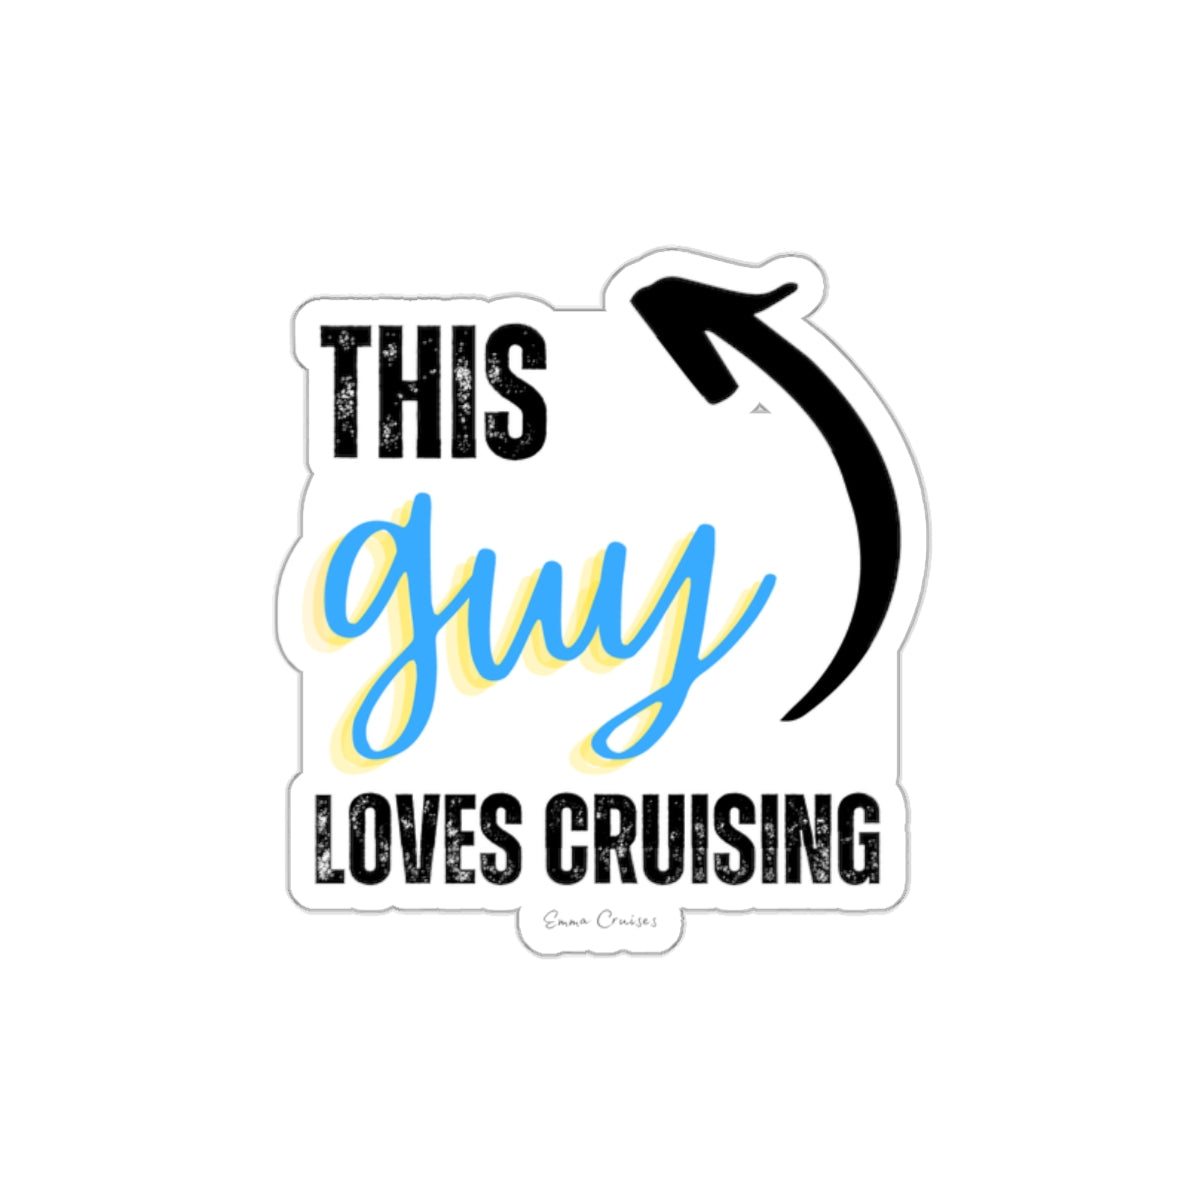 This Guy Loves Cruising - Die-Cut Sticker